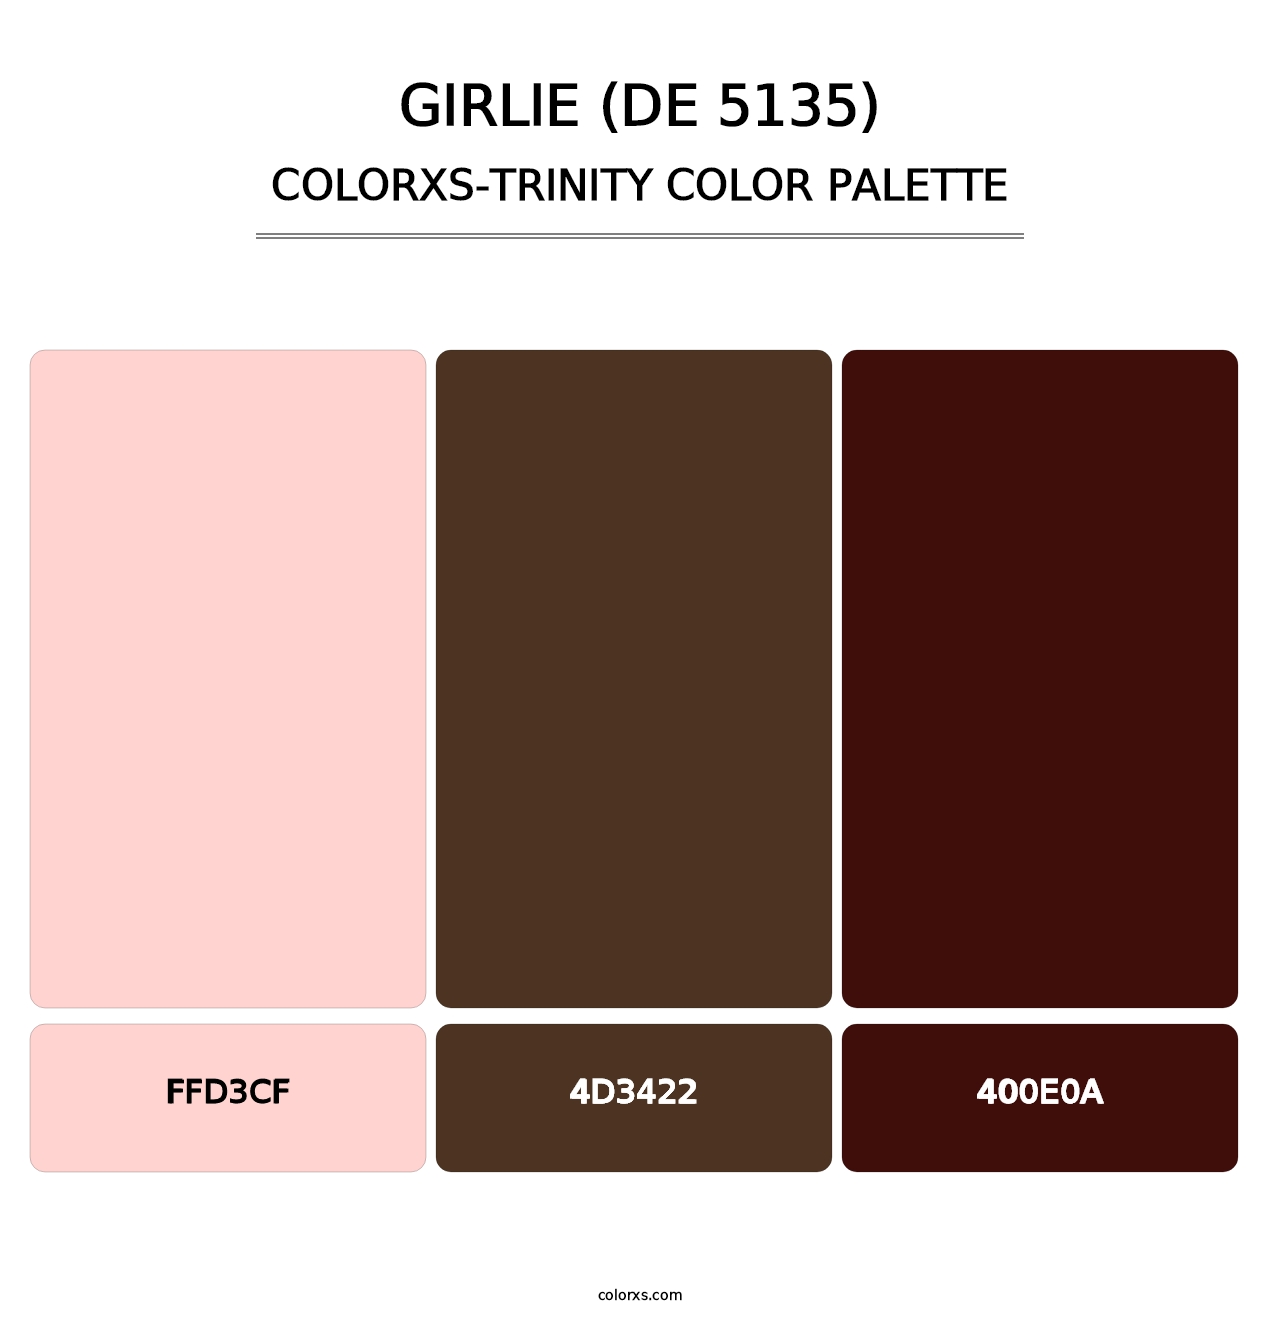 Girlie (DE 5135) - Colorxs Trinity Palette